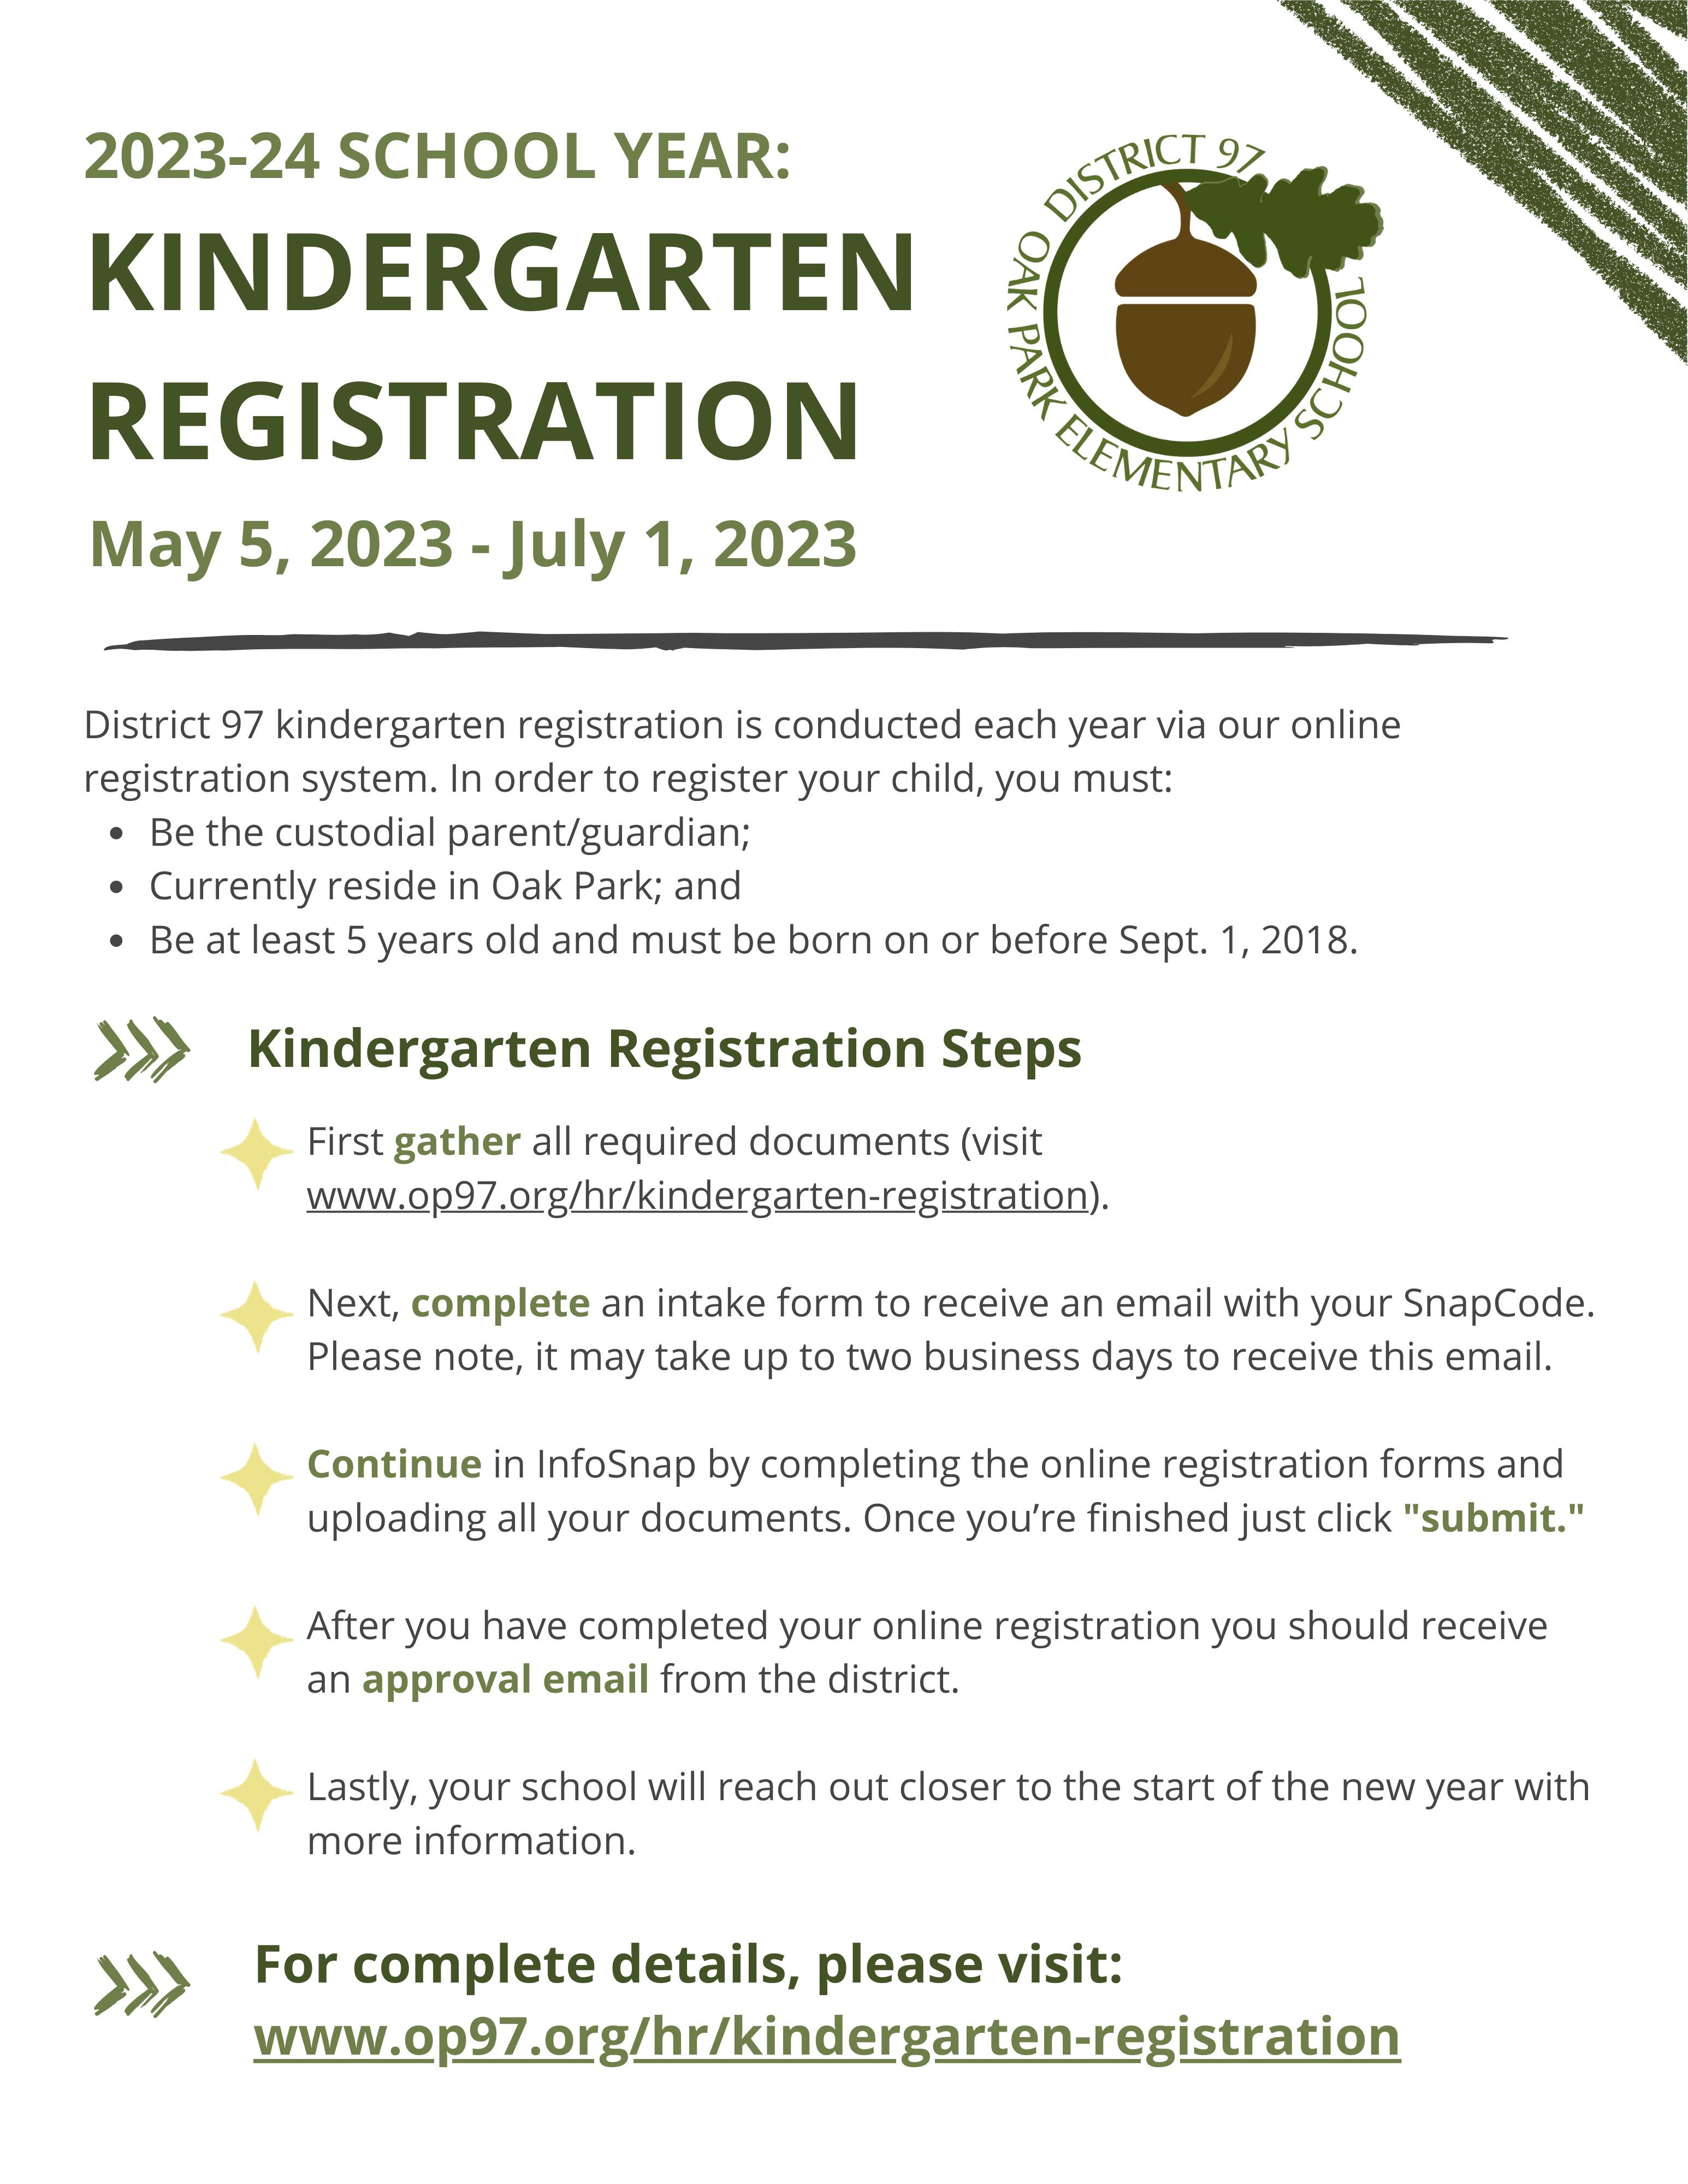 2023-2024 Kindergarten Registration